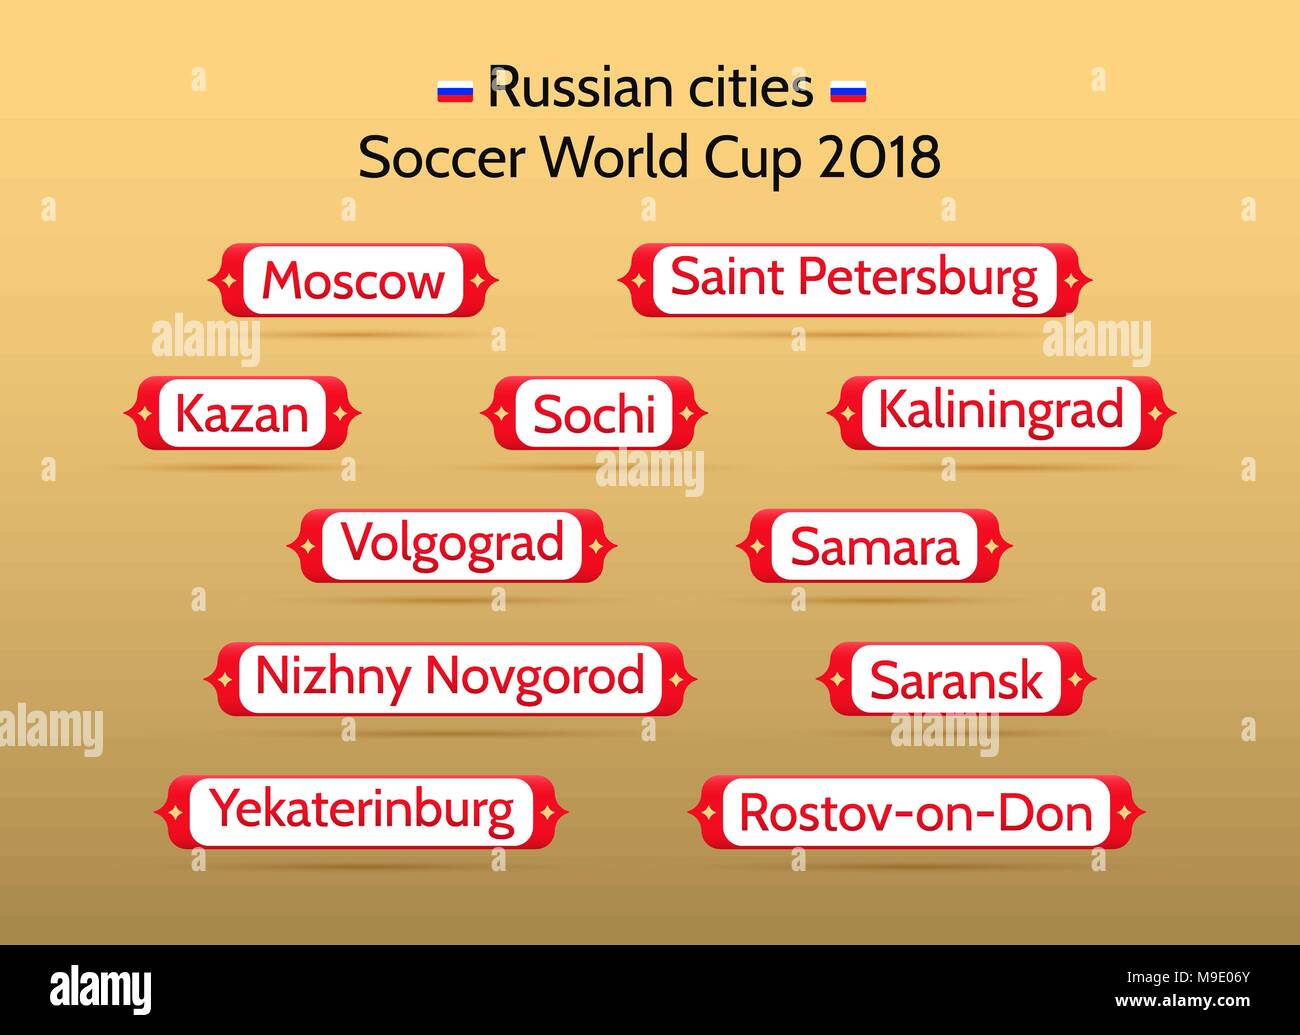 Championnat de Football 2018 dans les villes russes. Vector badges avec le nom des 11 villes russes où auront lieu des allumettes. Couche de fichiers supplémentaires : bleu Illustration de Vecteur